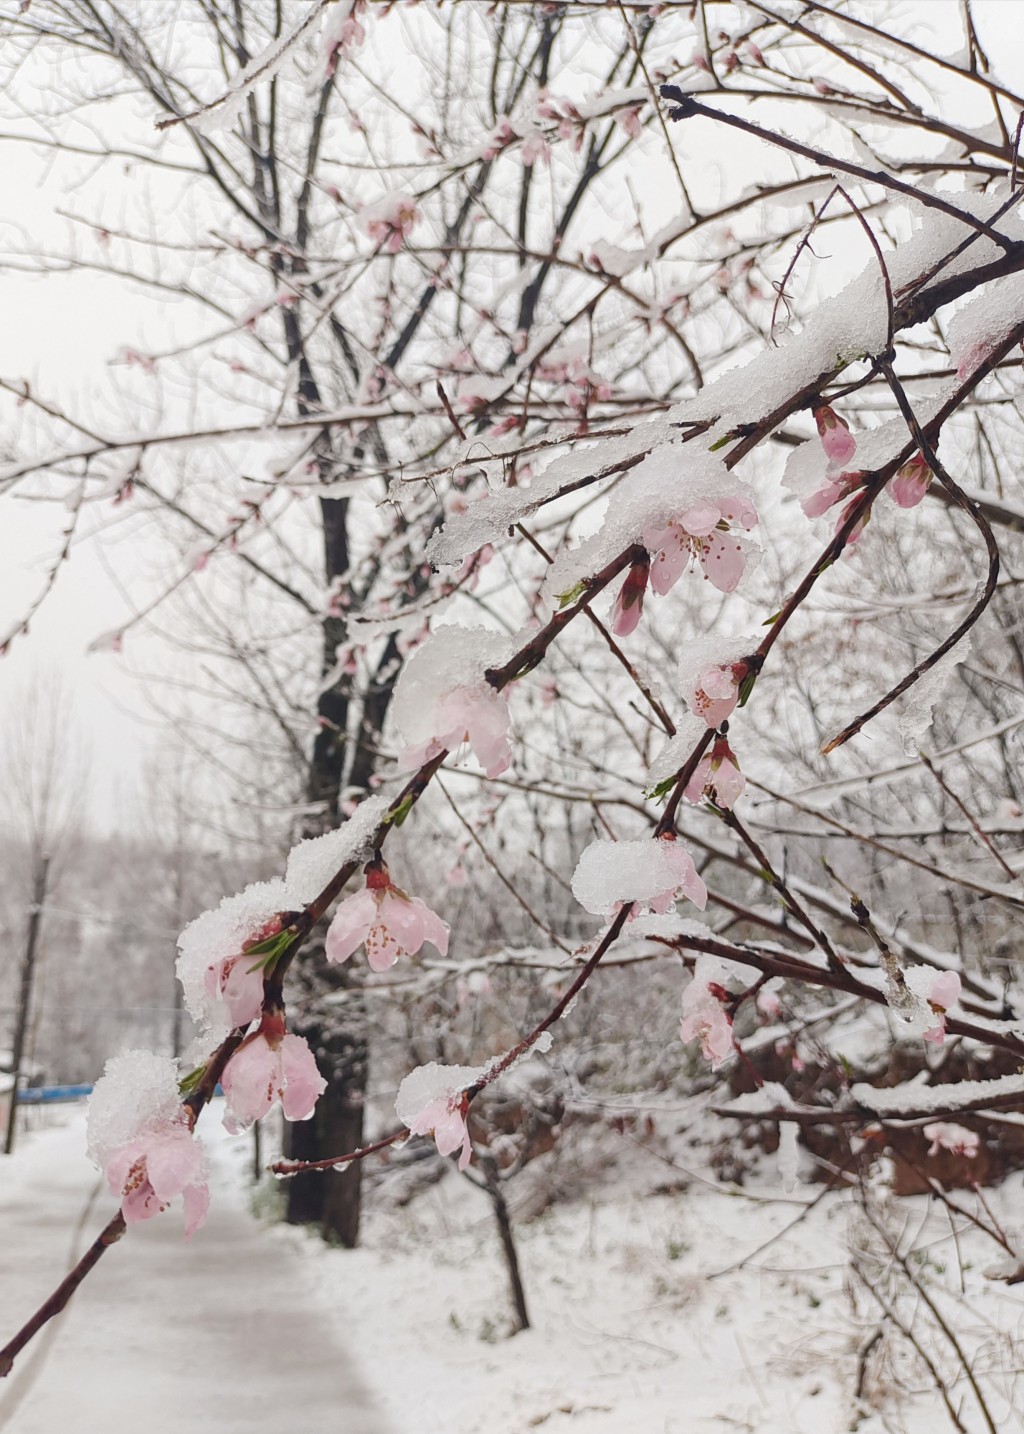 網民分享下雪的景色。 微博圖